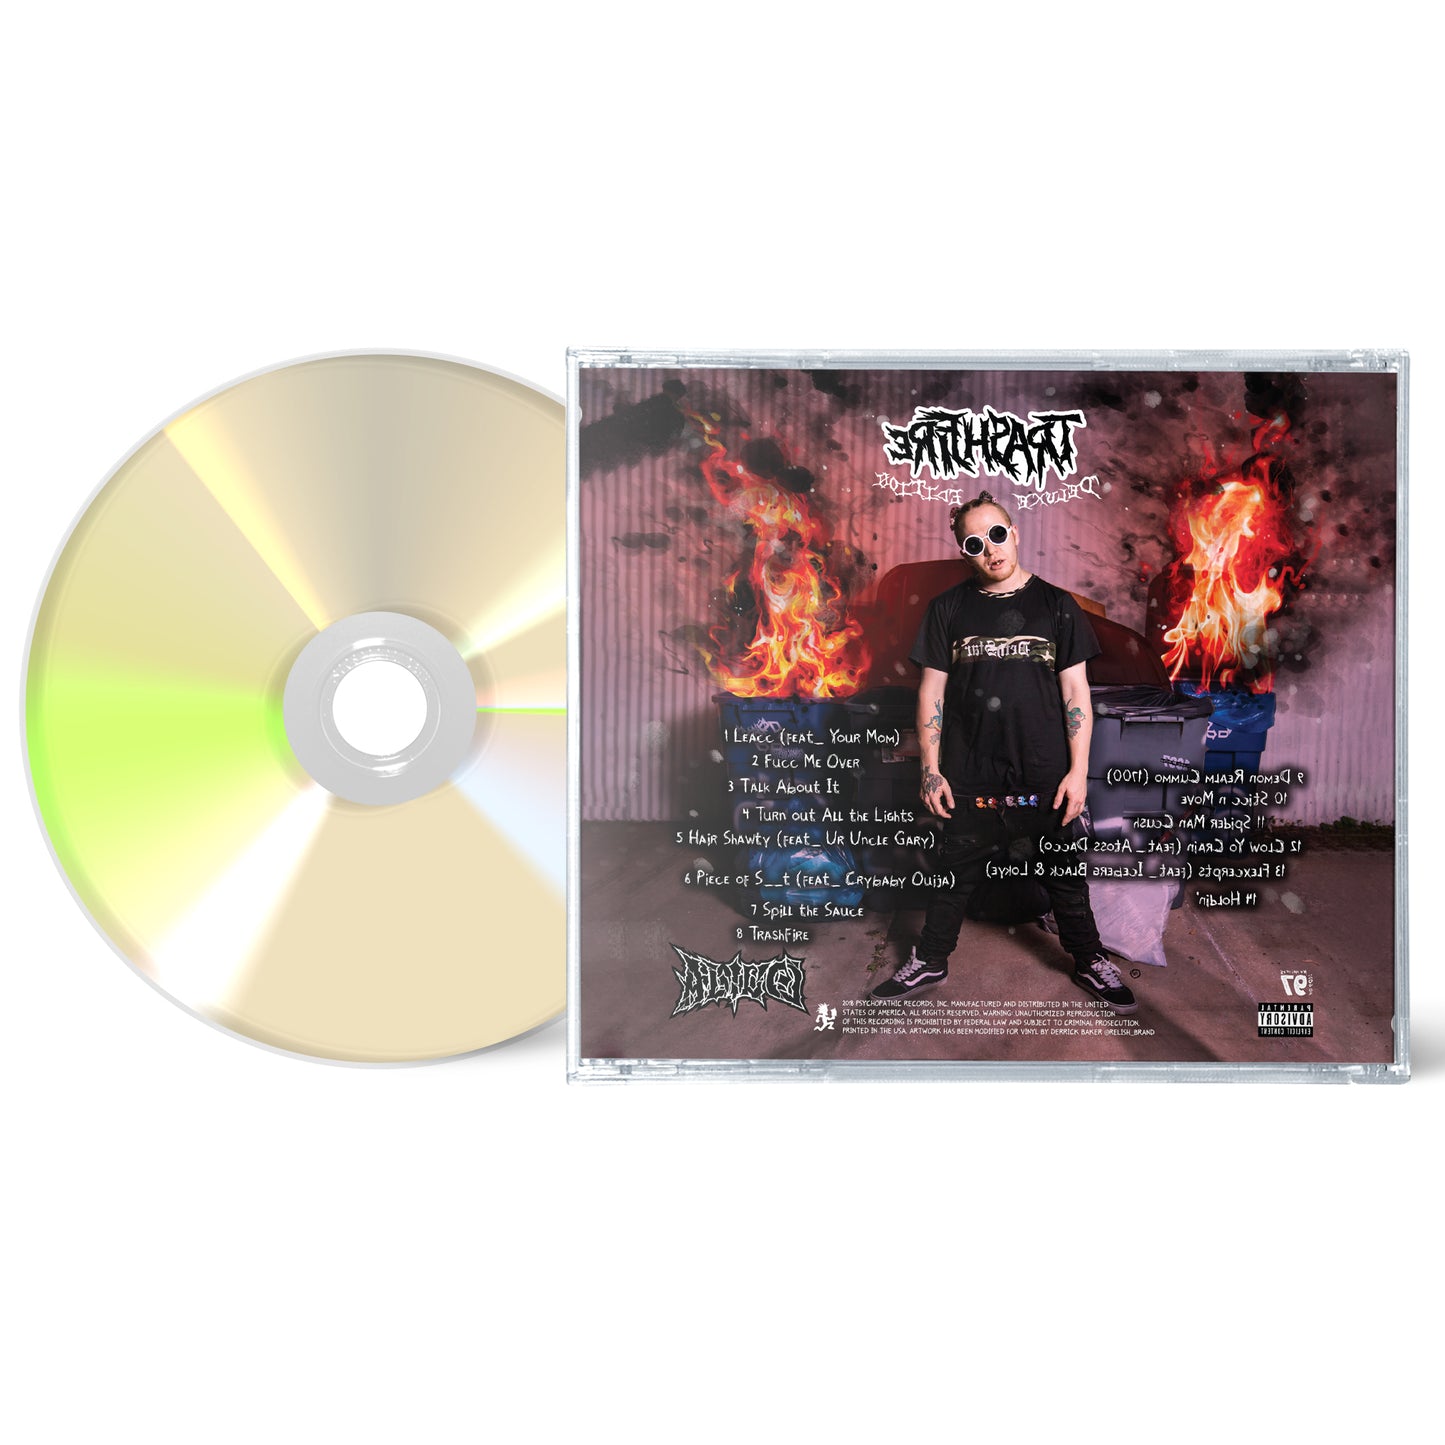 CD - Trashfire - Erifhsart Deluxe Edition - Jewel Case